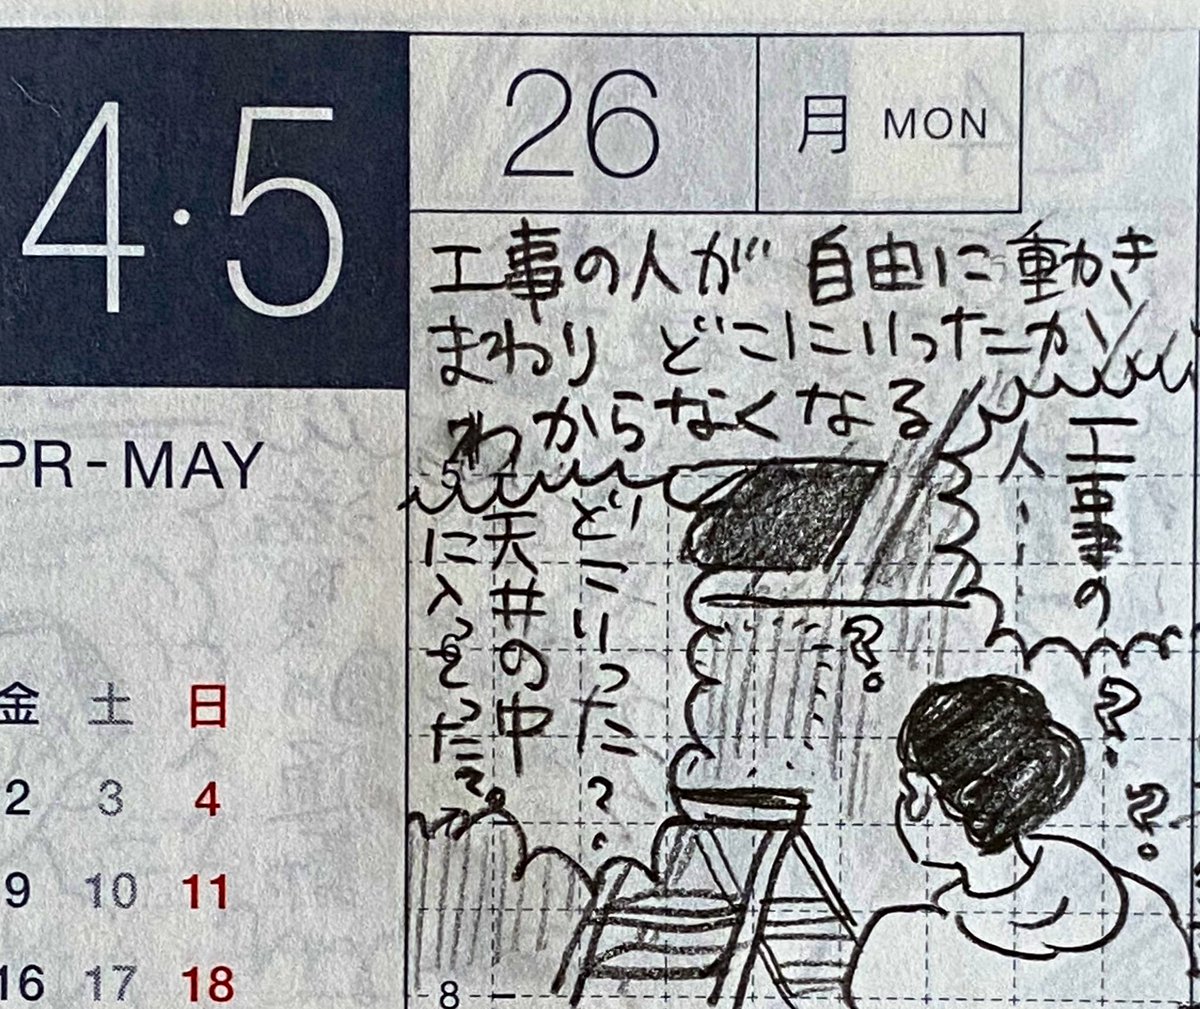 4月最終週と5月第一週の一コマ絵日記 1/2
工事、日本国憲法の本を買いに行く、アルミの鍋焼きうどん、昭和の日とみどりの日を混同など。
#一コマ絵日記 